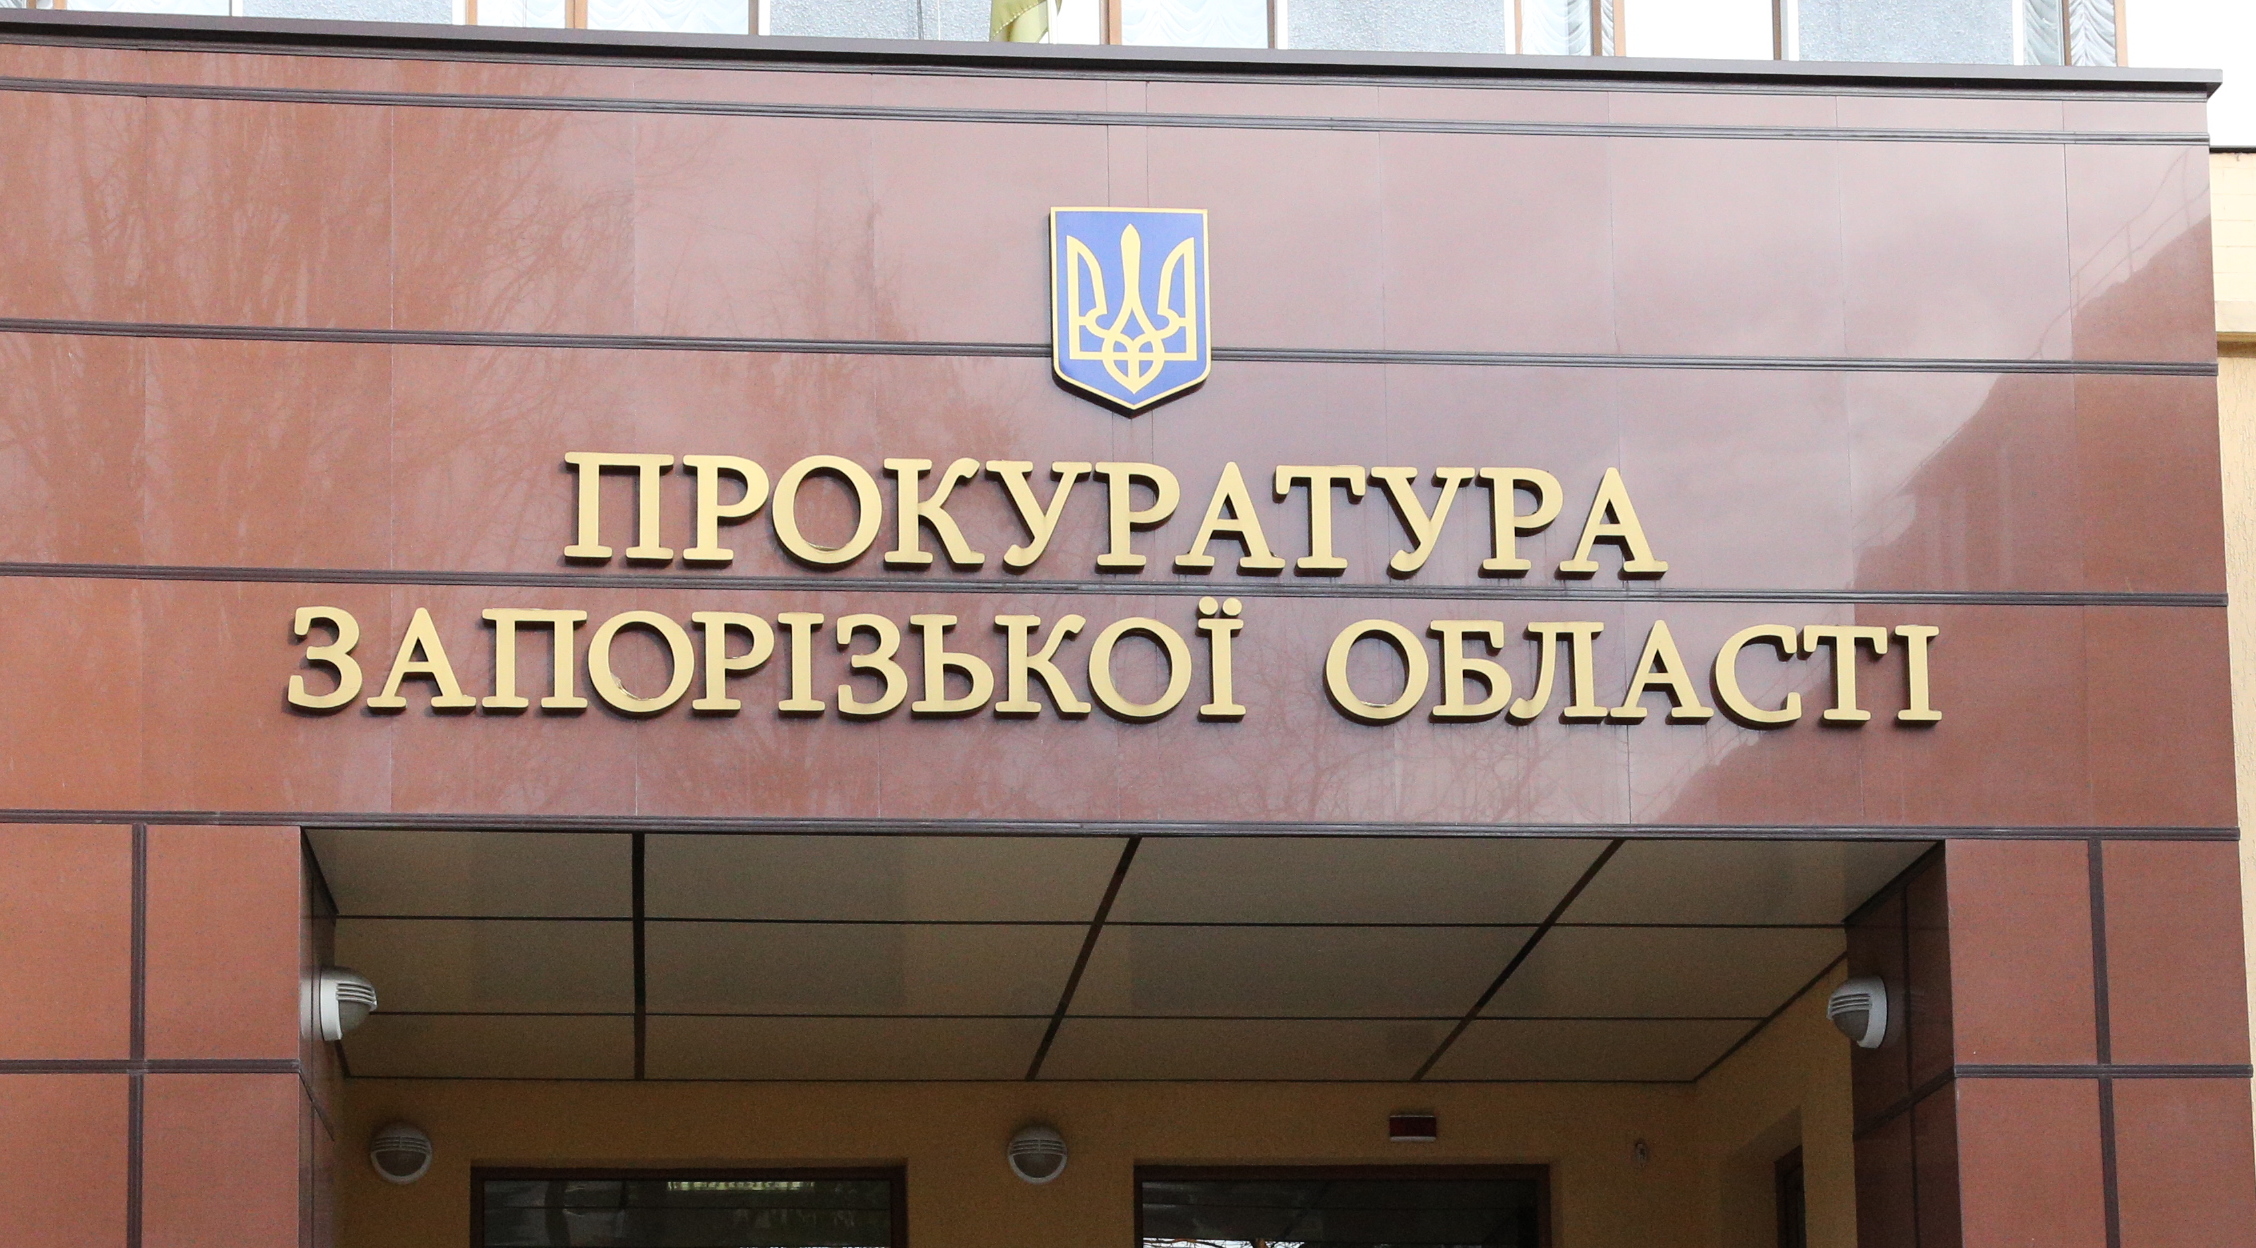 Против депутата от Оппоблока Балицкого открыли дело о сепаратизме